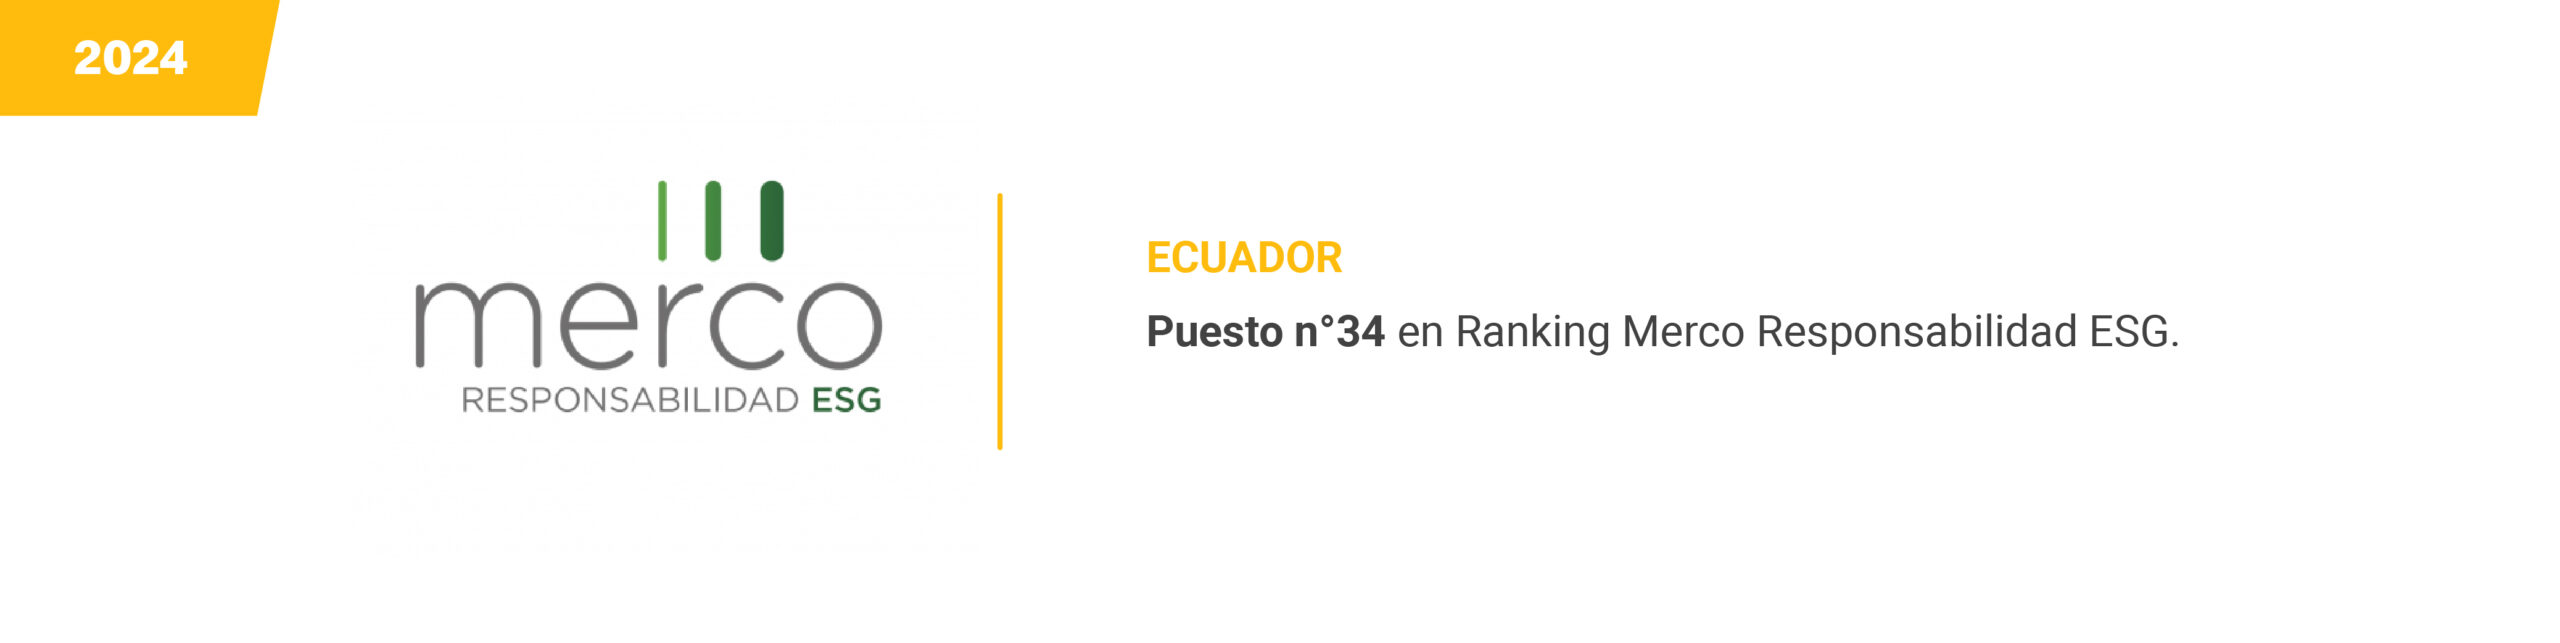 MERCO - Ecuador - 2024